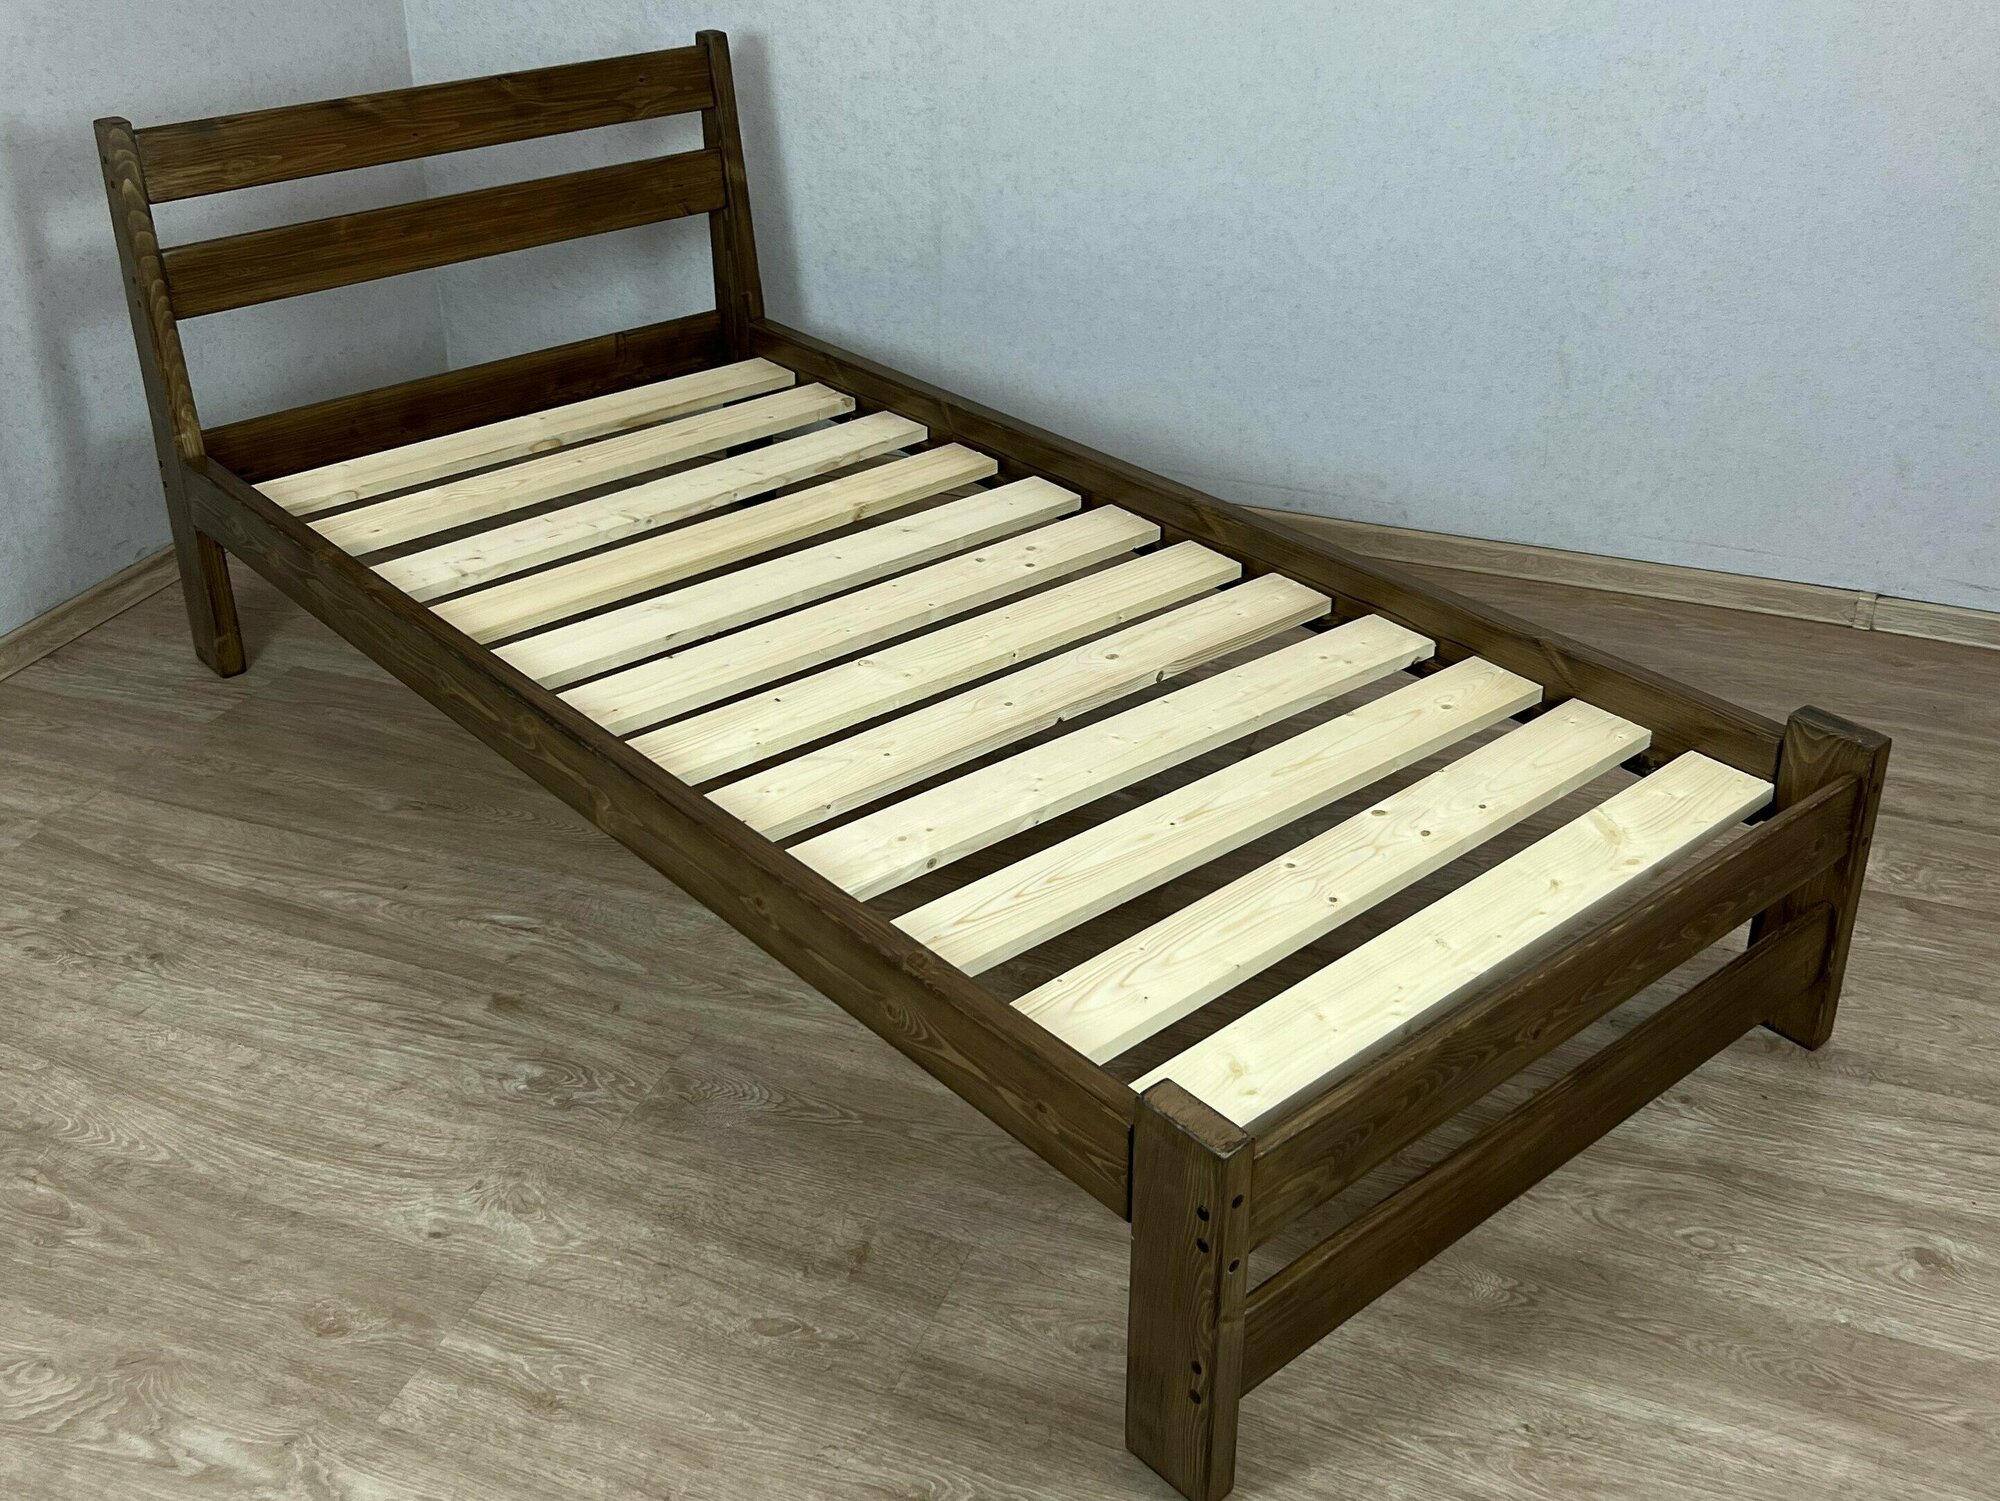 Кровать односпальная Мишка усиленная из массива сосны с реечным основанием, 200х100 см (габариты 210х110), цвет темный дуб